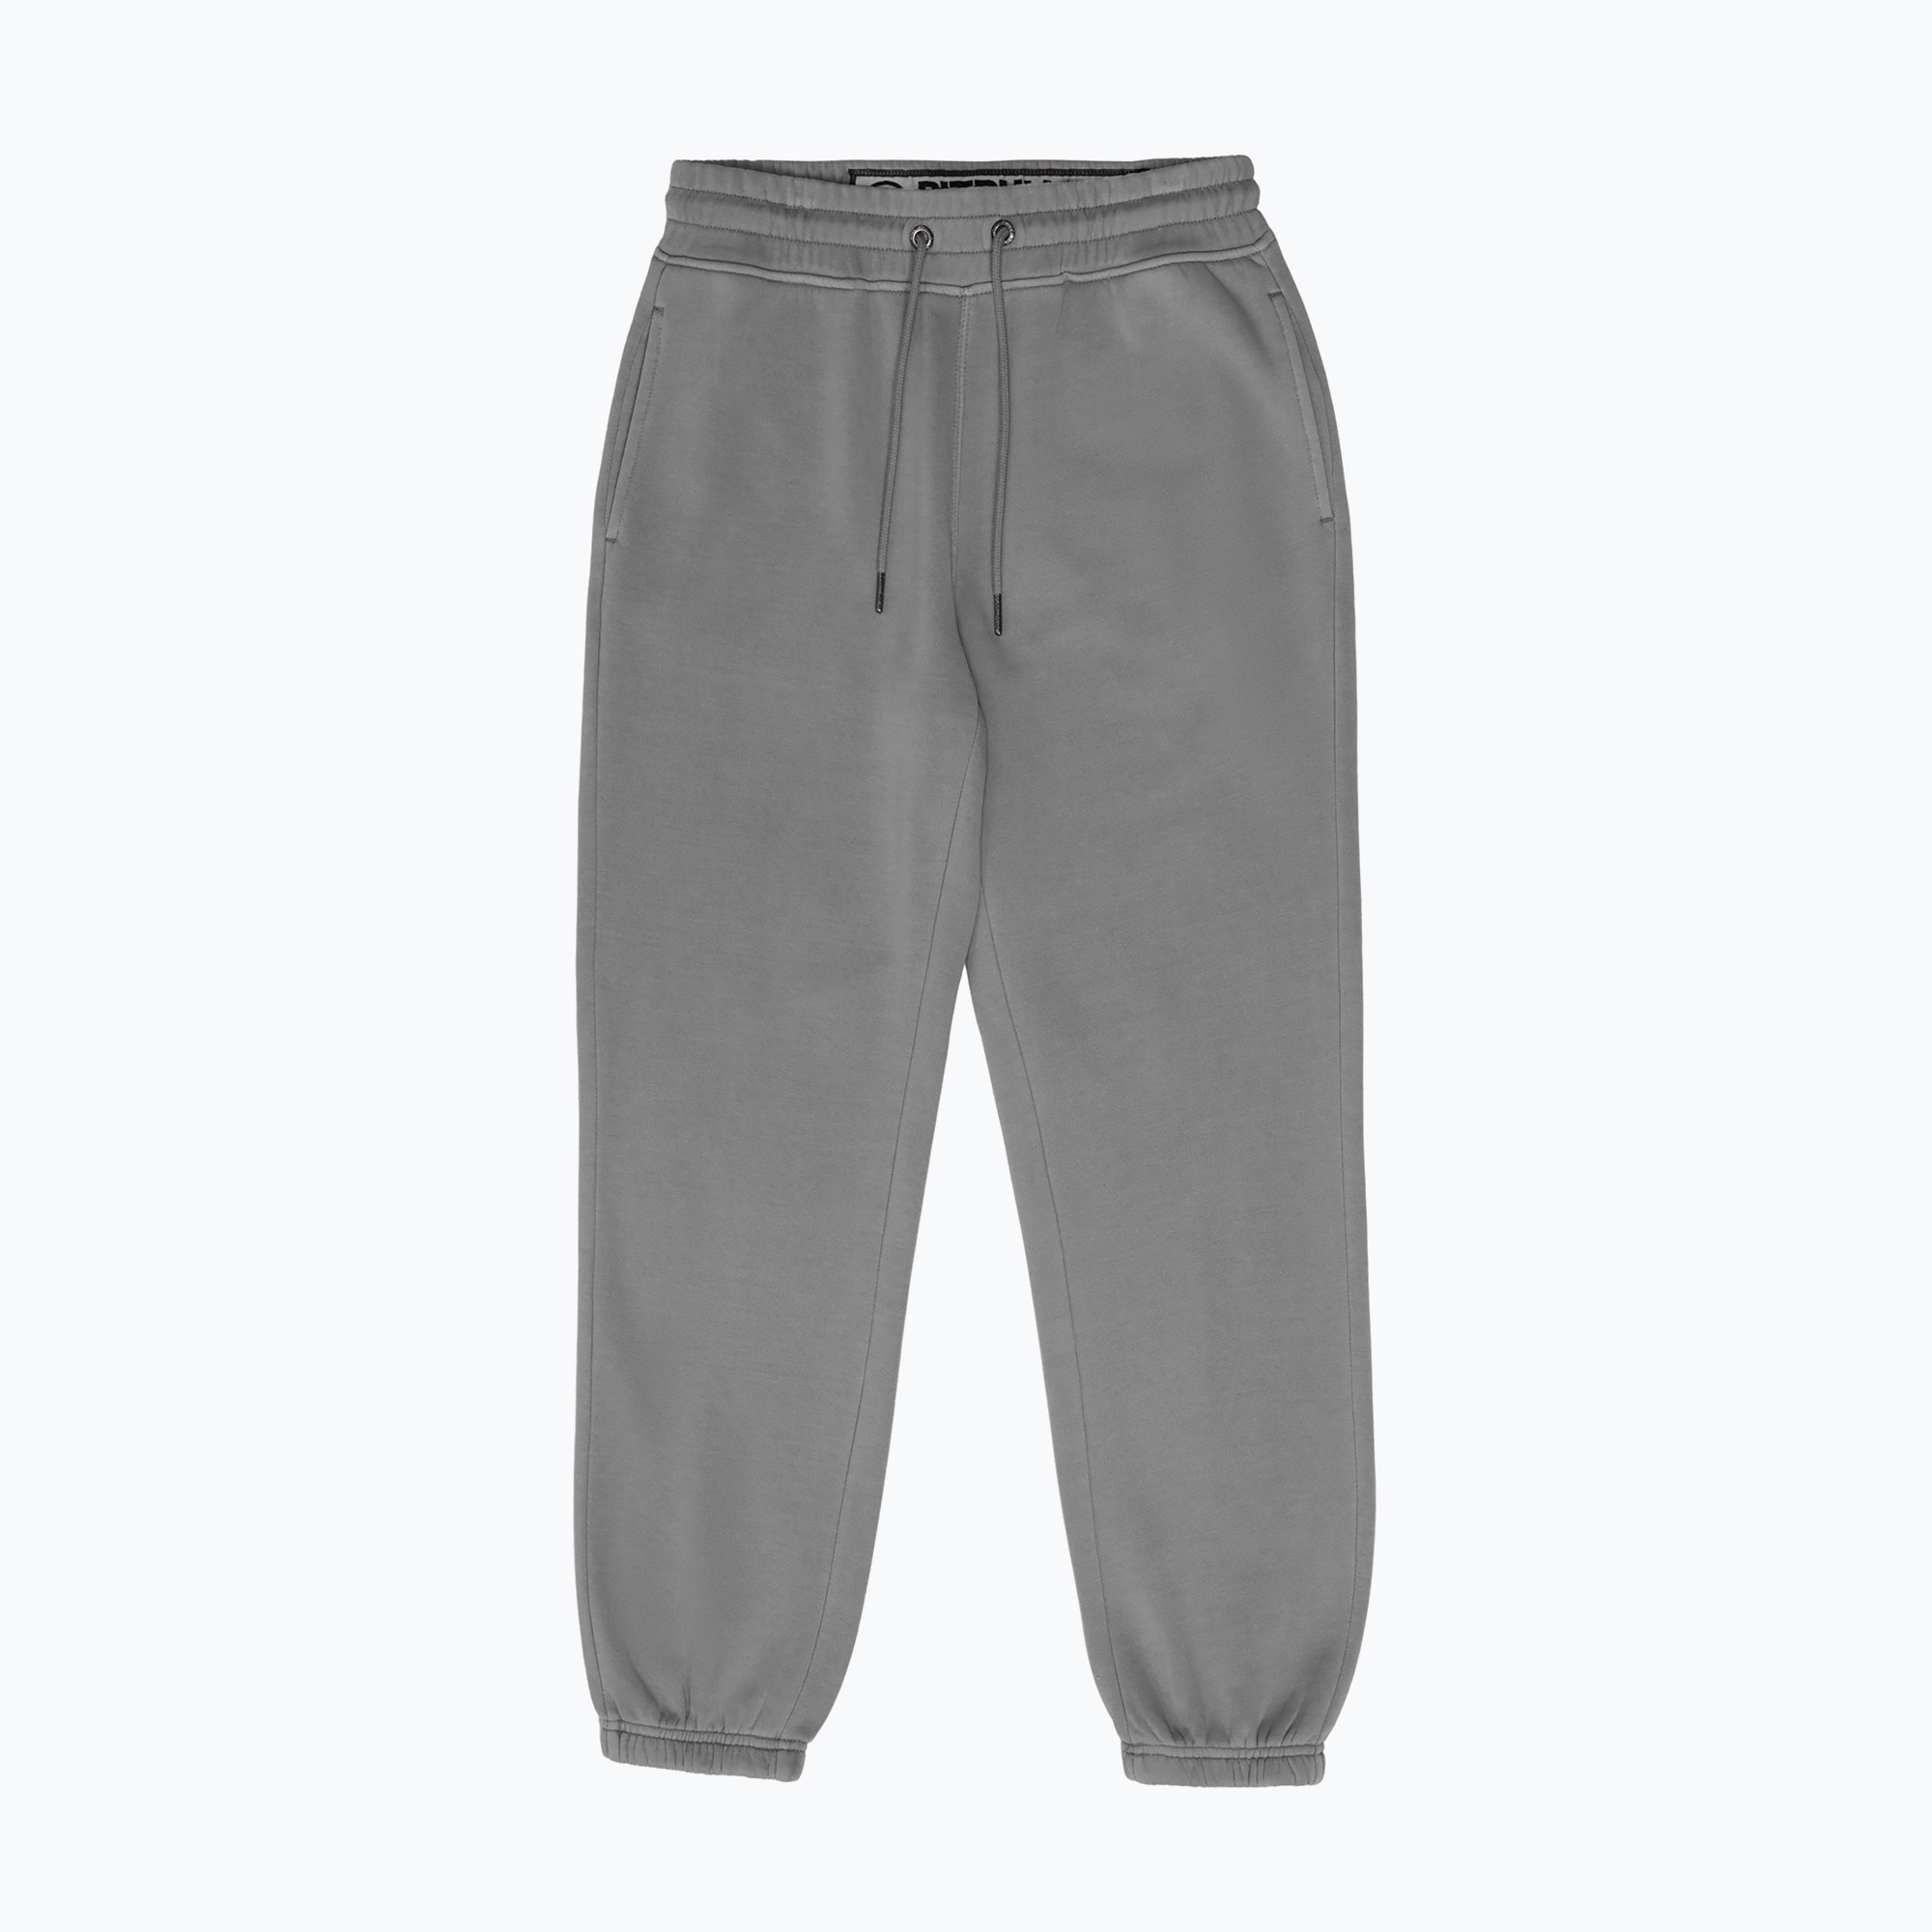 Pantaloni pentru femei Pitbull West Coast Manzanita Washed grey